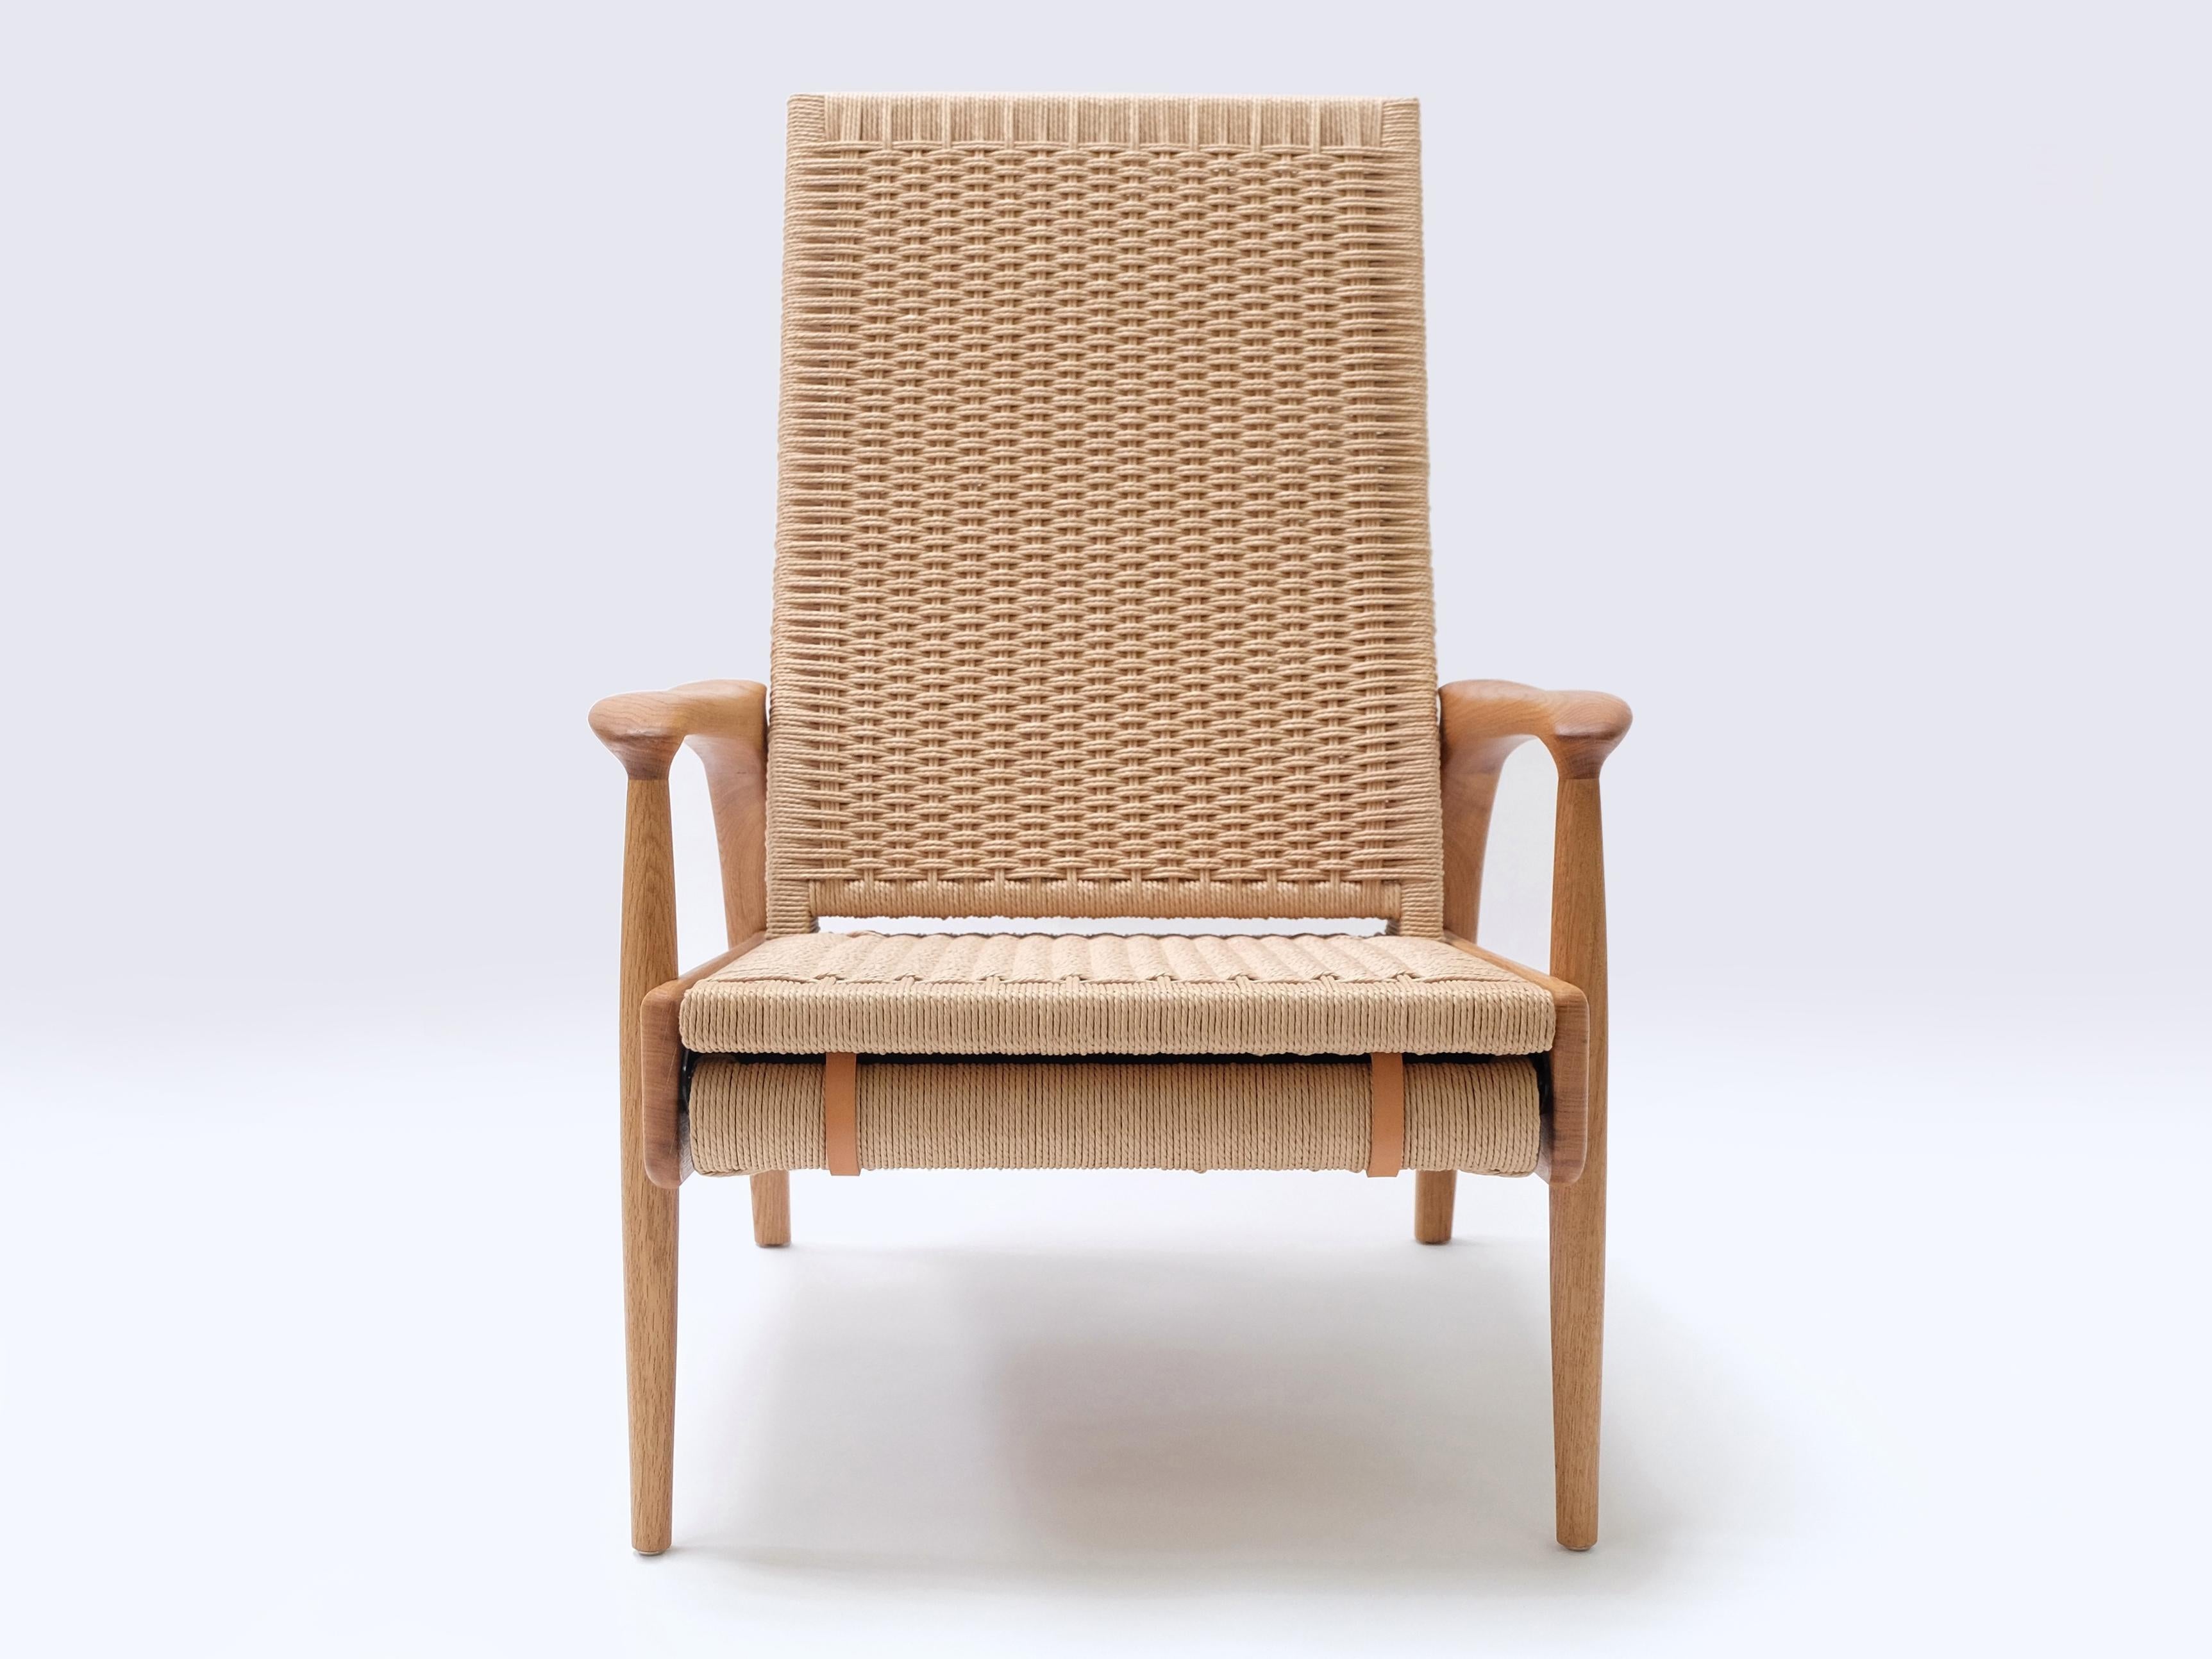 Ein Paar handgefertigte Eco-Lounge-Sessel FENDRIK von Studio180degree
Abgebildet in nachhaltiger, massiver, naturgeölter Eiche und original dänischem Natur-Cord

Edel - taktil - raffiniert - nachhaltig
Reclining Eco Lounge Chair FENDRIK ist ein